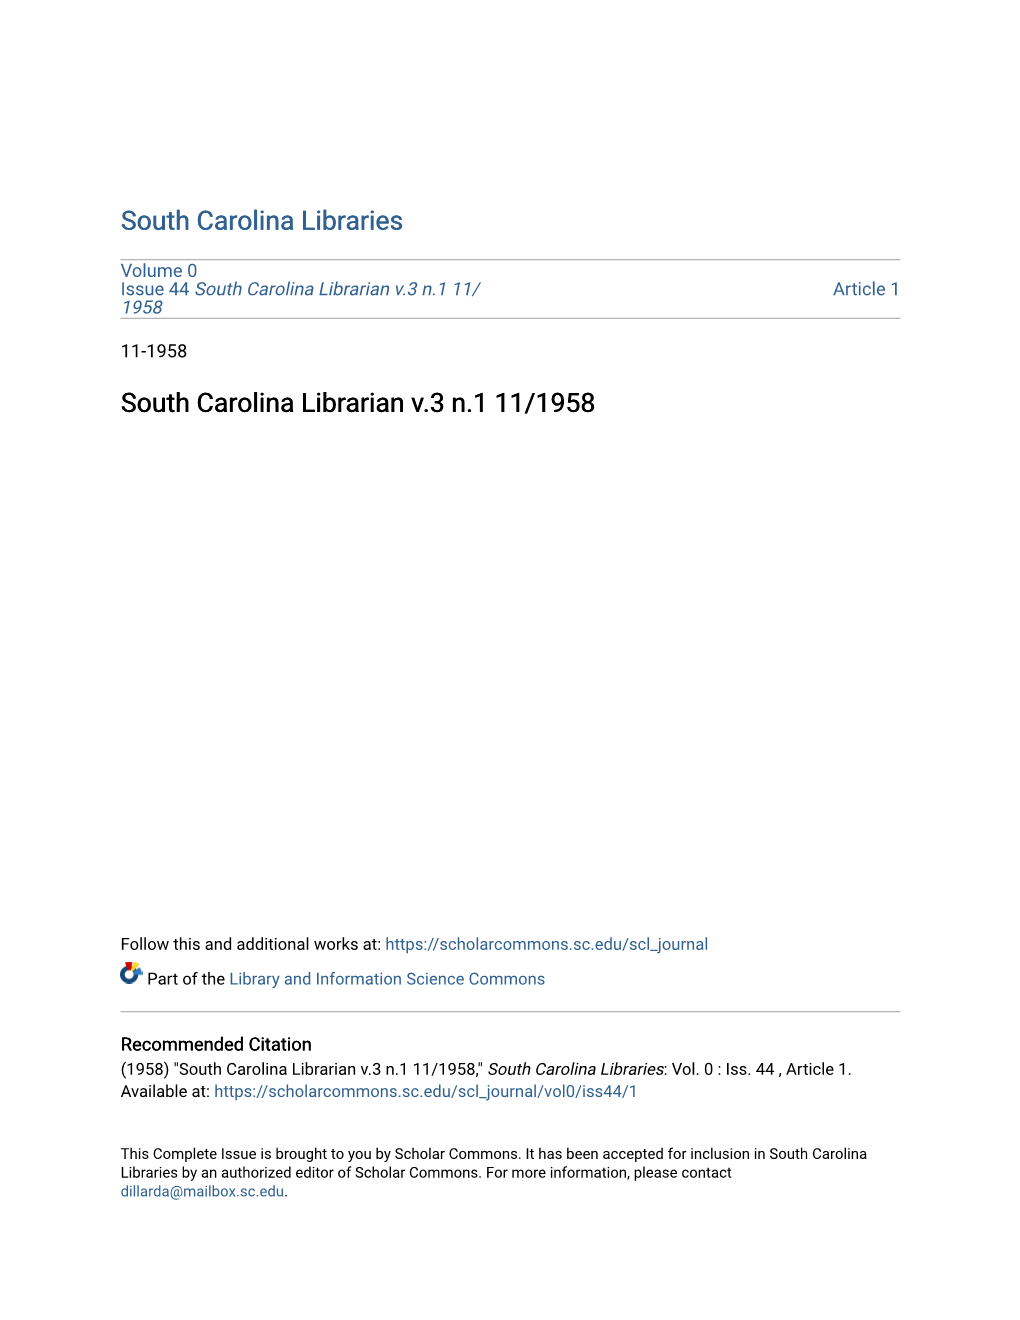 South Carolina Librarian V.3 N.1 11/1958